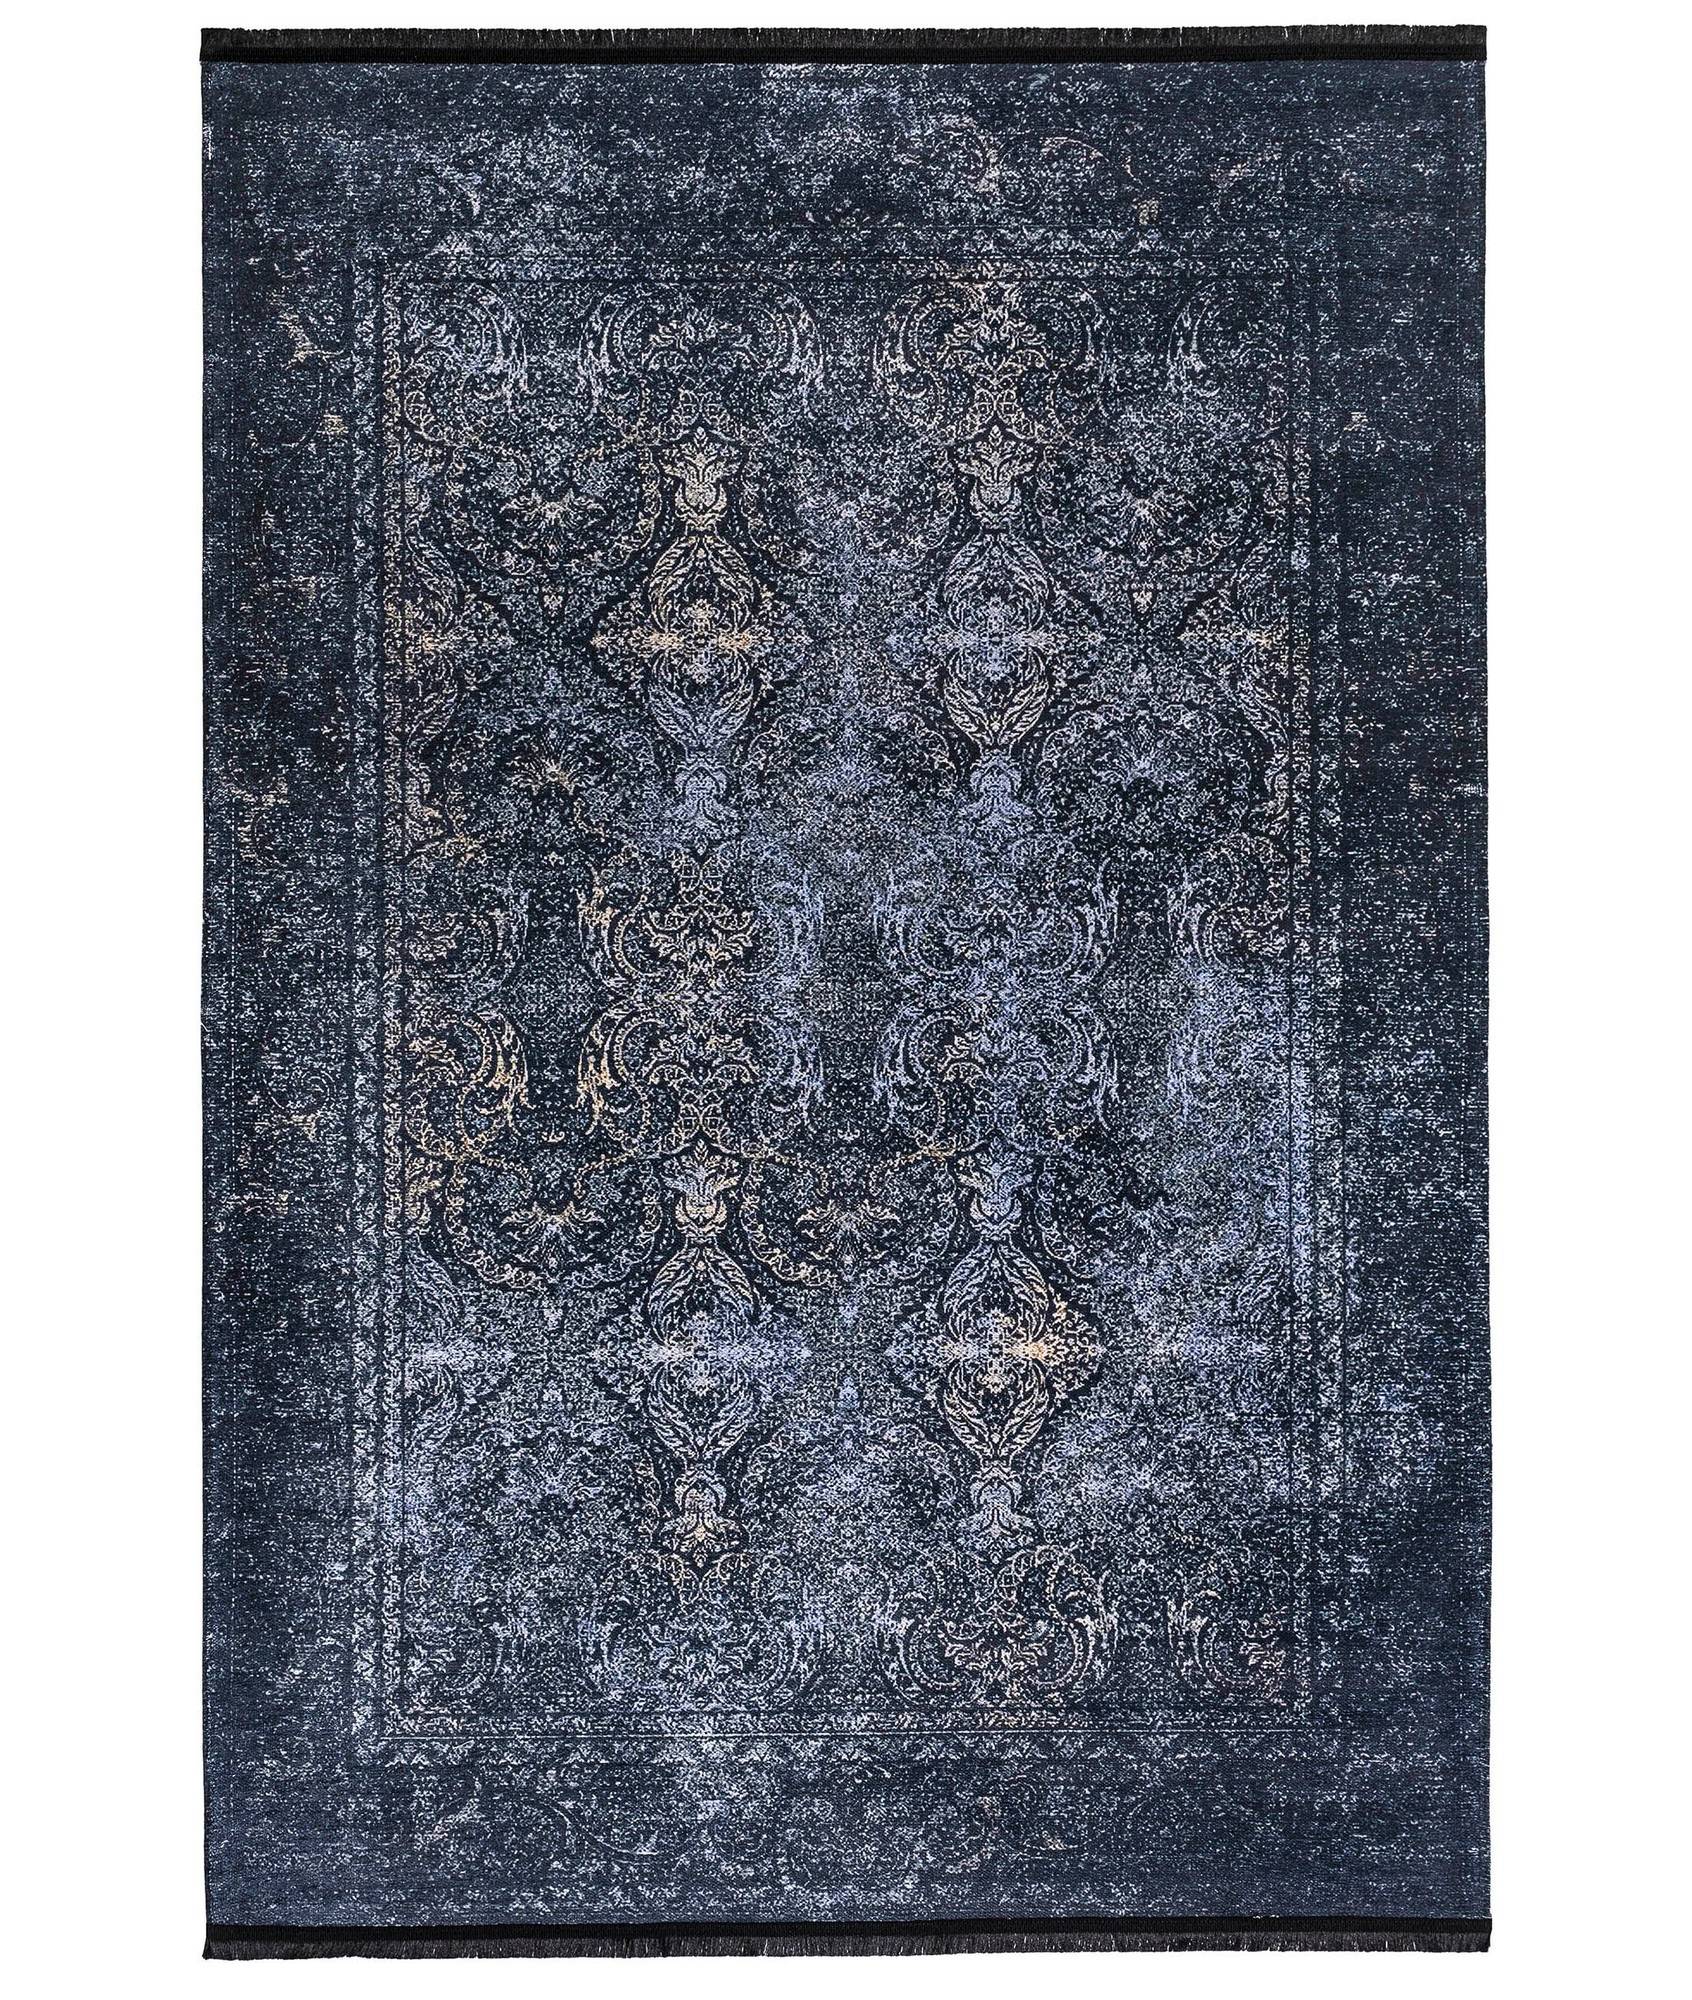 Hadorn Teppich 80x200cm Viktorianisches Muster Blau und Schwarz